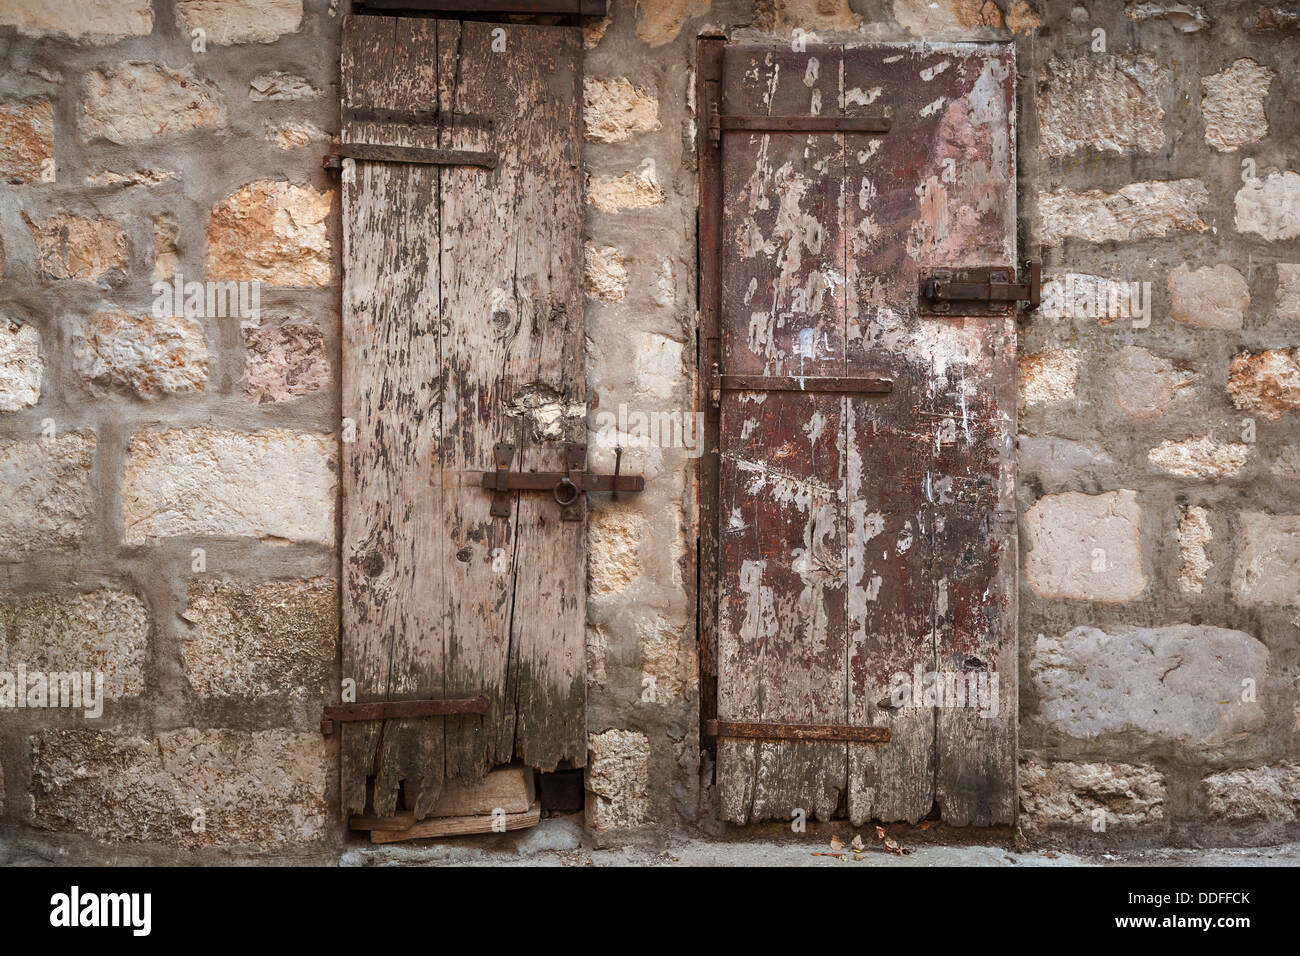 Portes en bois antique verrouillée dans mur de pierre grise. La ville de Perast, Monténégro Banque D'Images